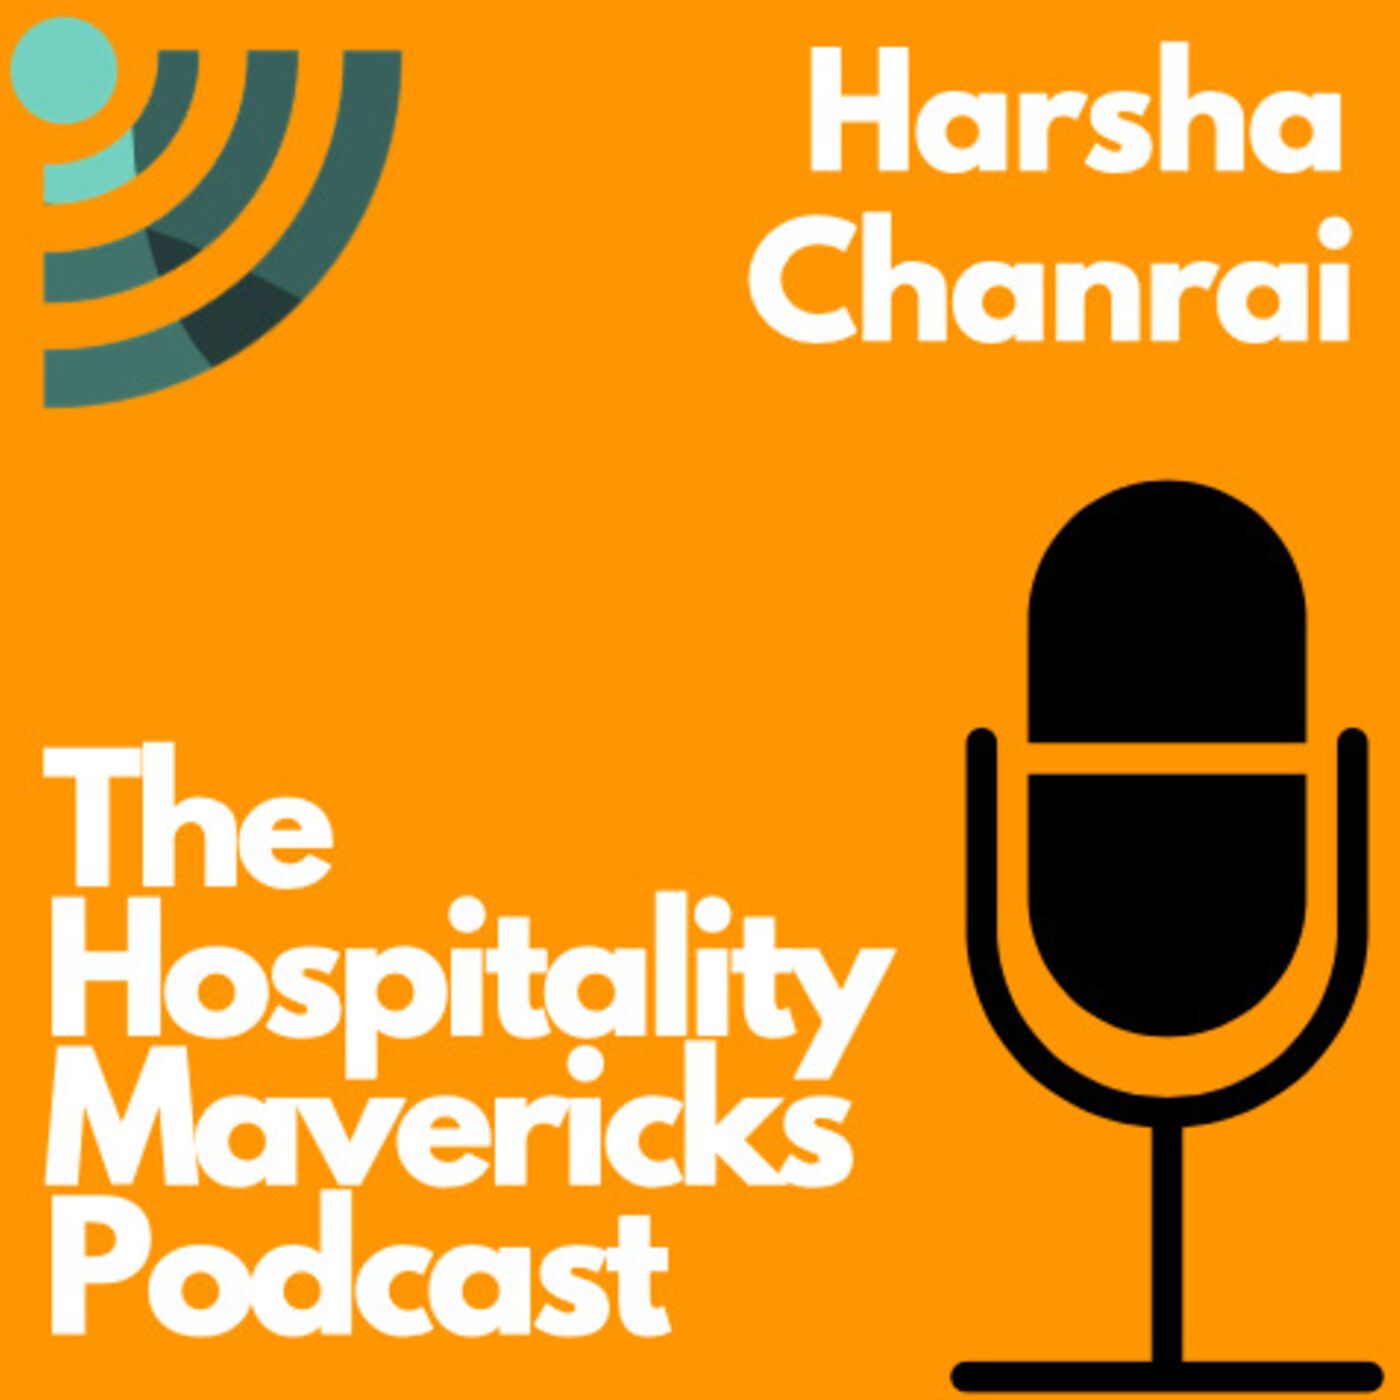 Hospitality Mavericks Podcast - Harsha Chanrai